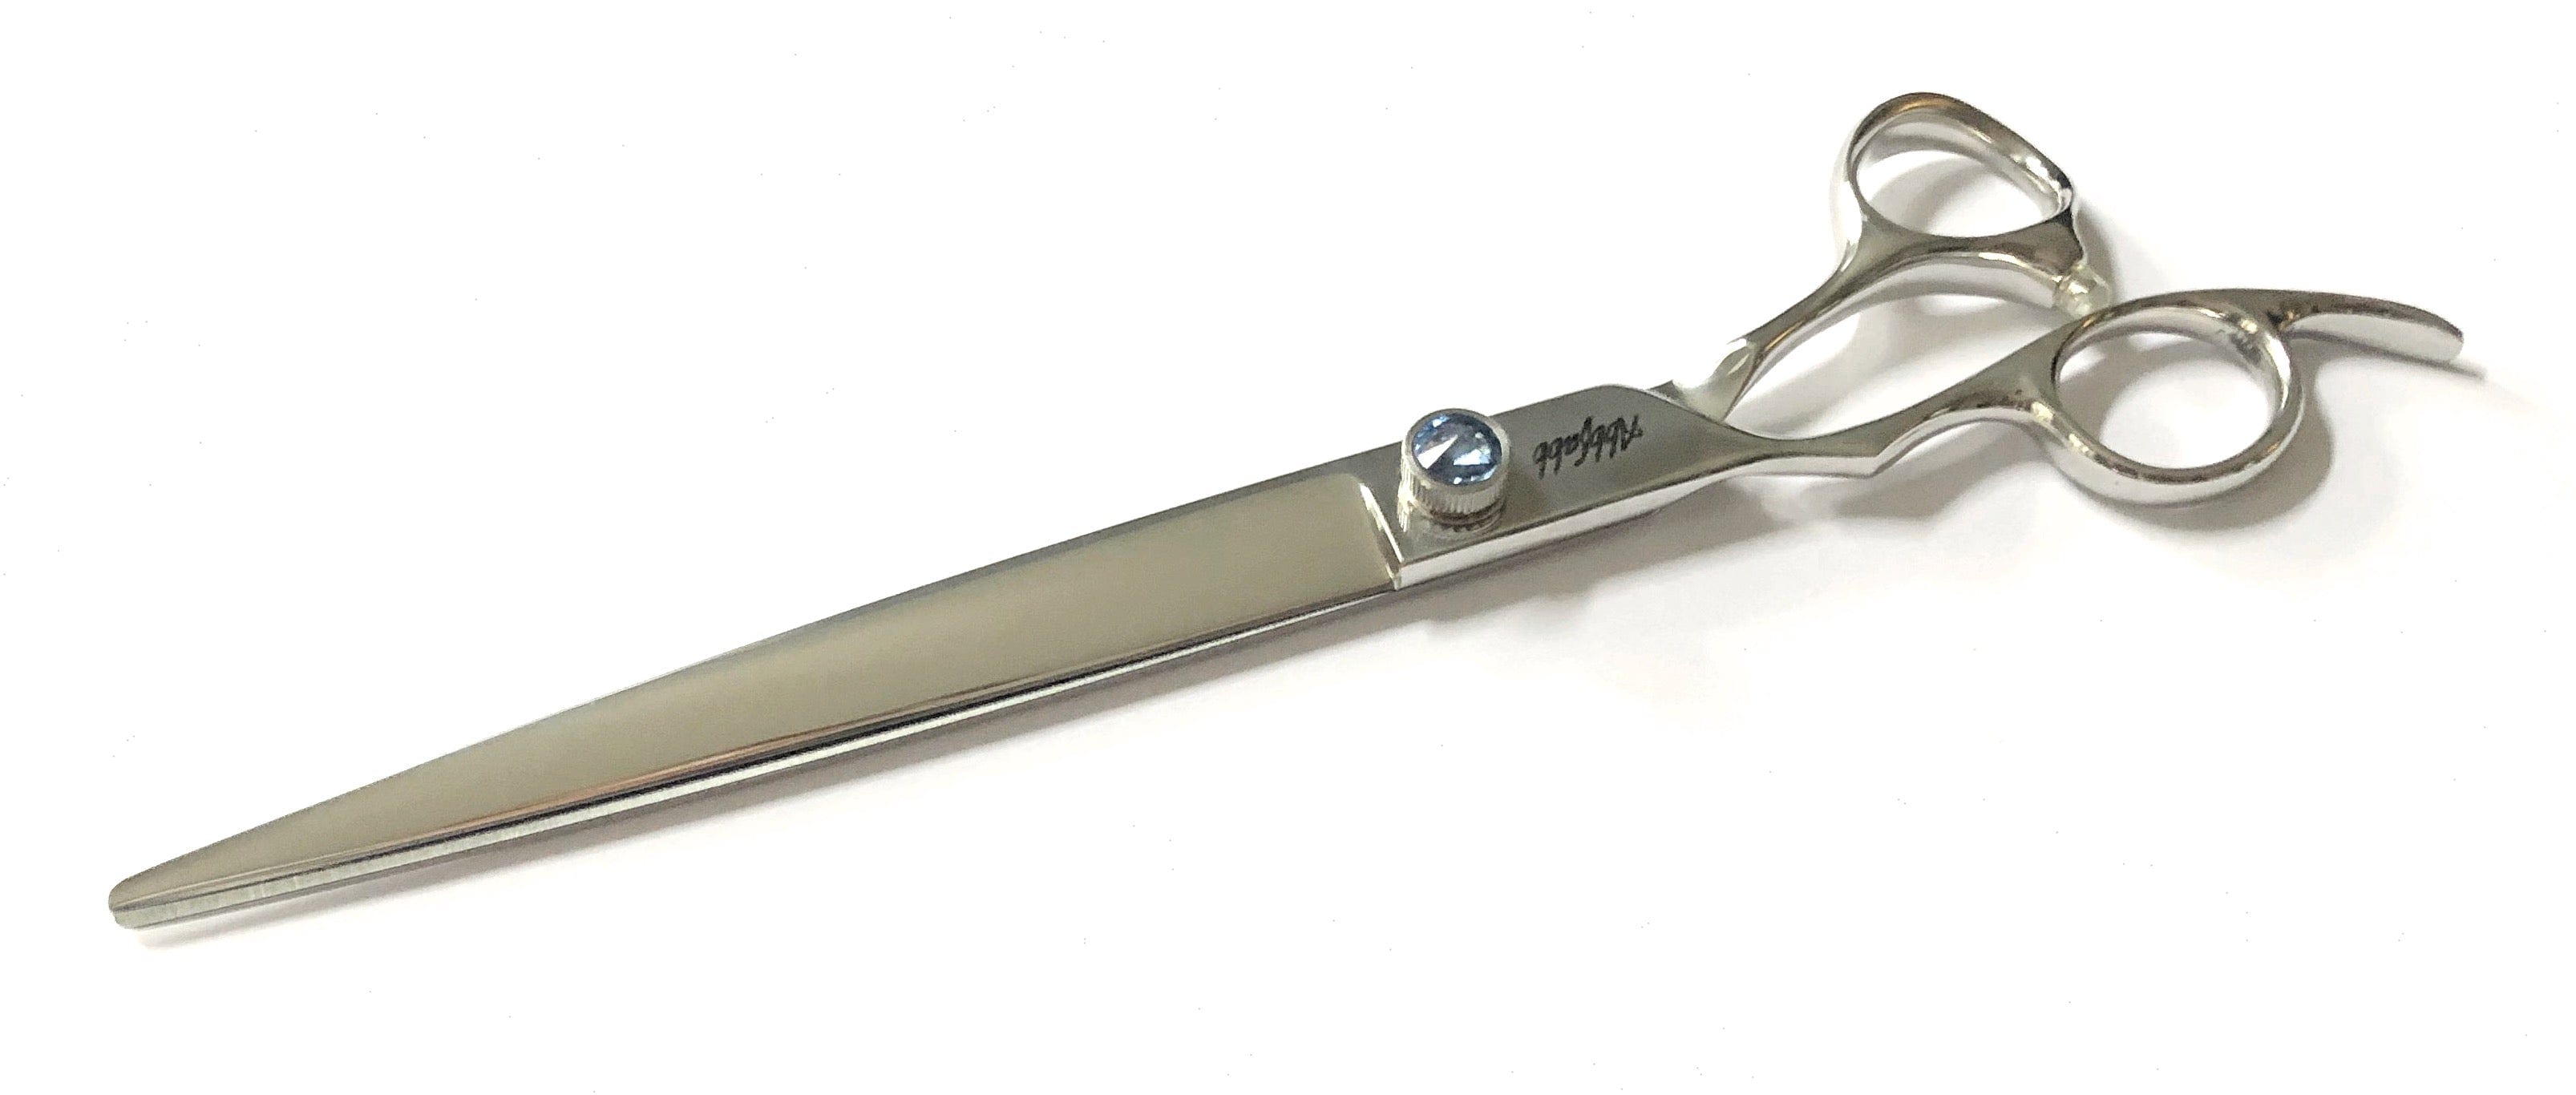 Abbfabb Grooming Scissors Ltd 8" Left Handed Straight Finishing Dog Grooming Scissor